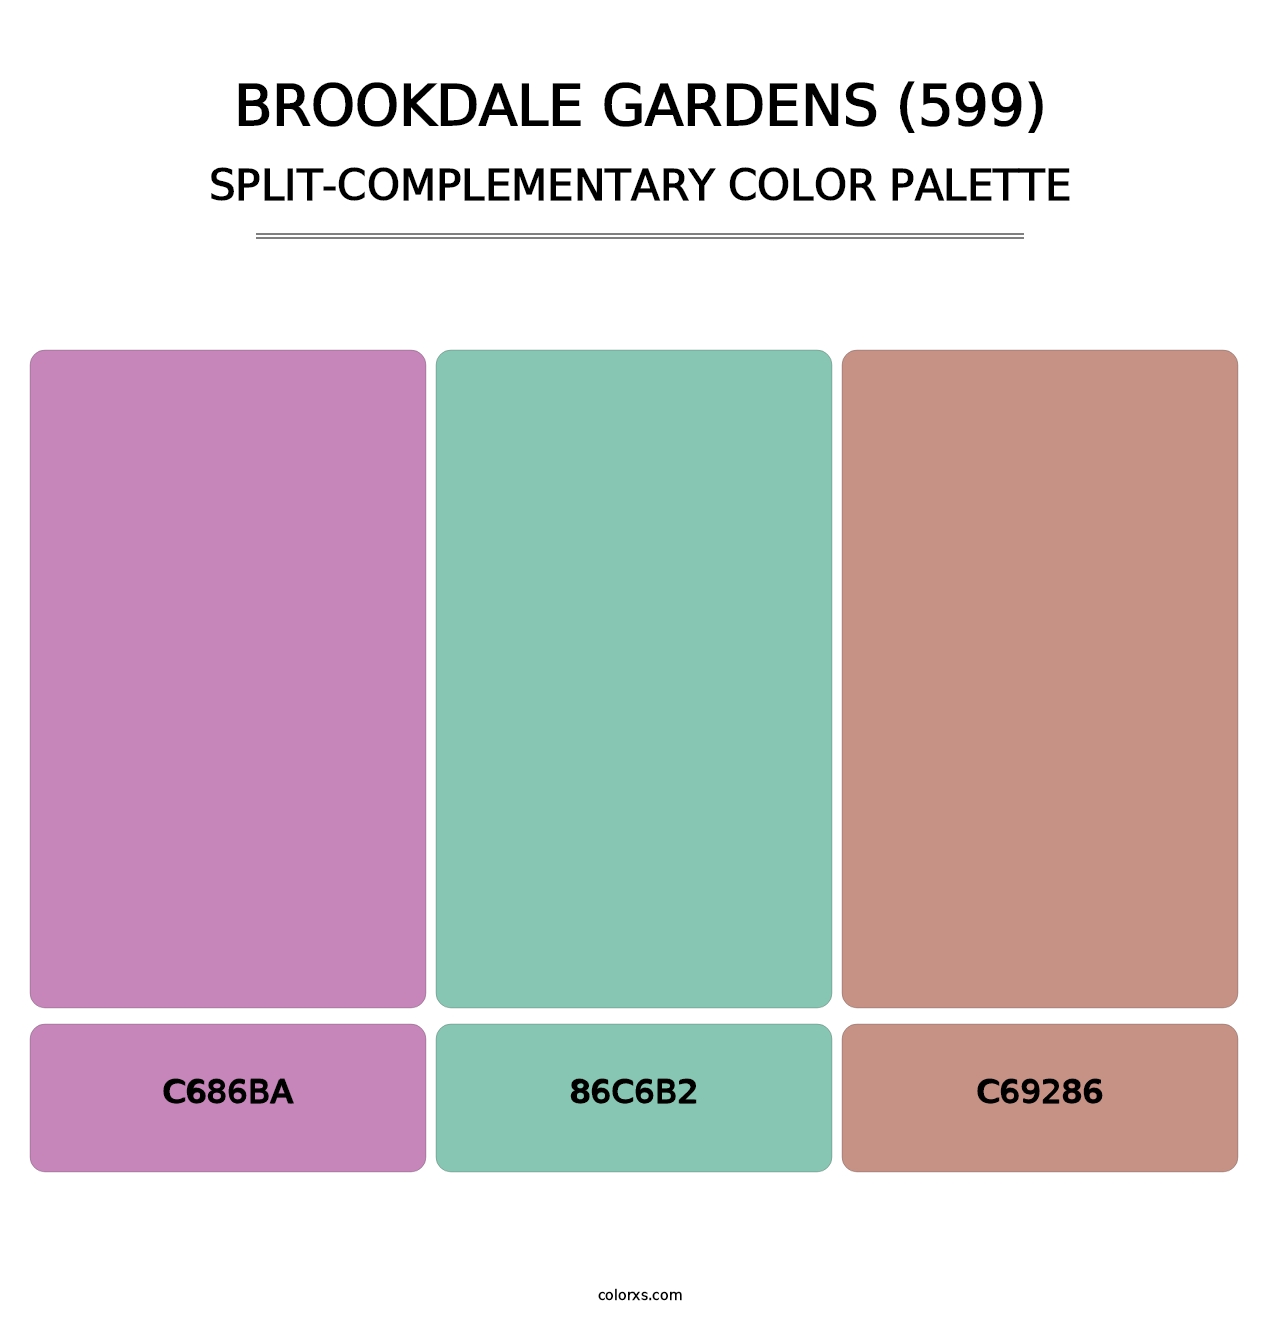 Brookdale Gardens (599) - Split-Complementary Color Palette